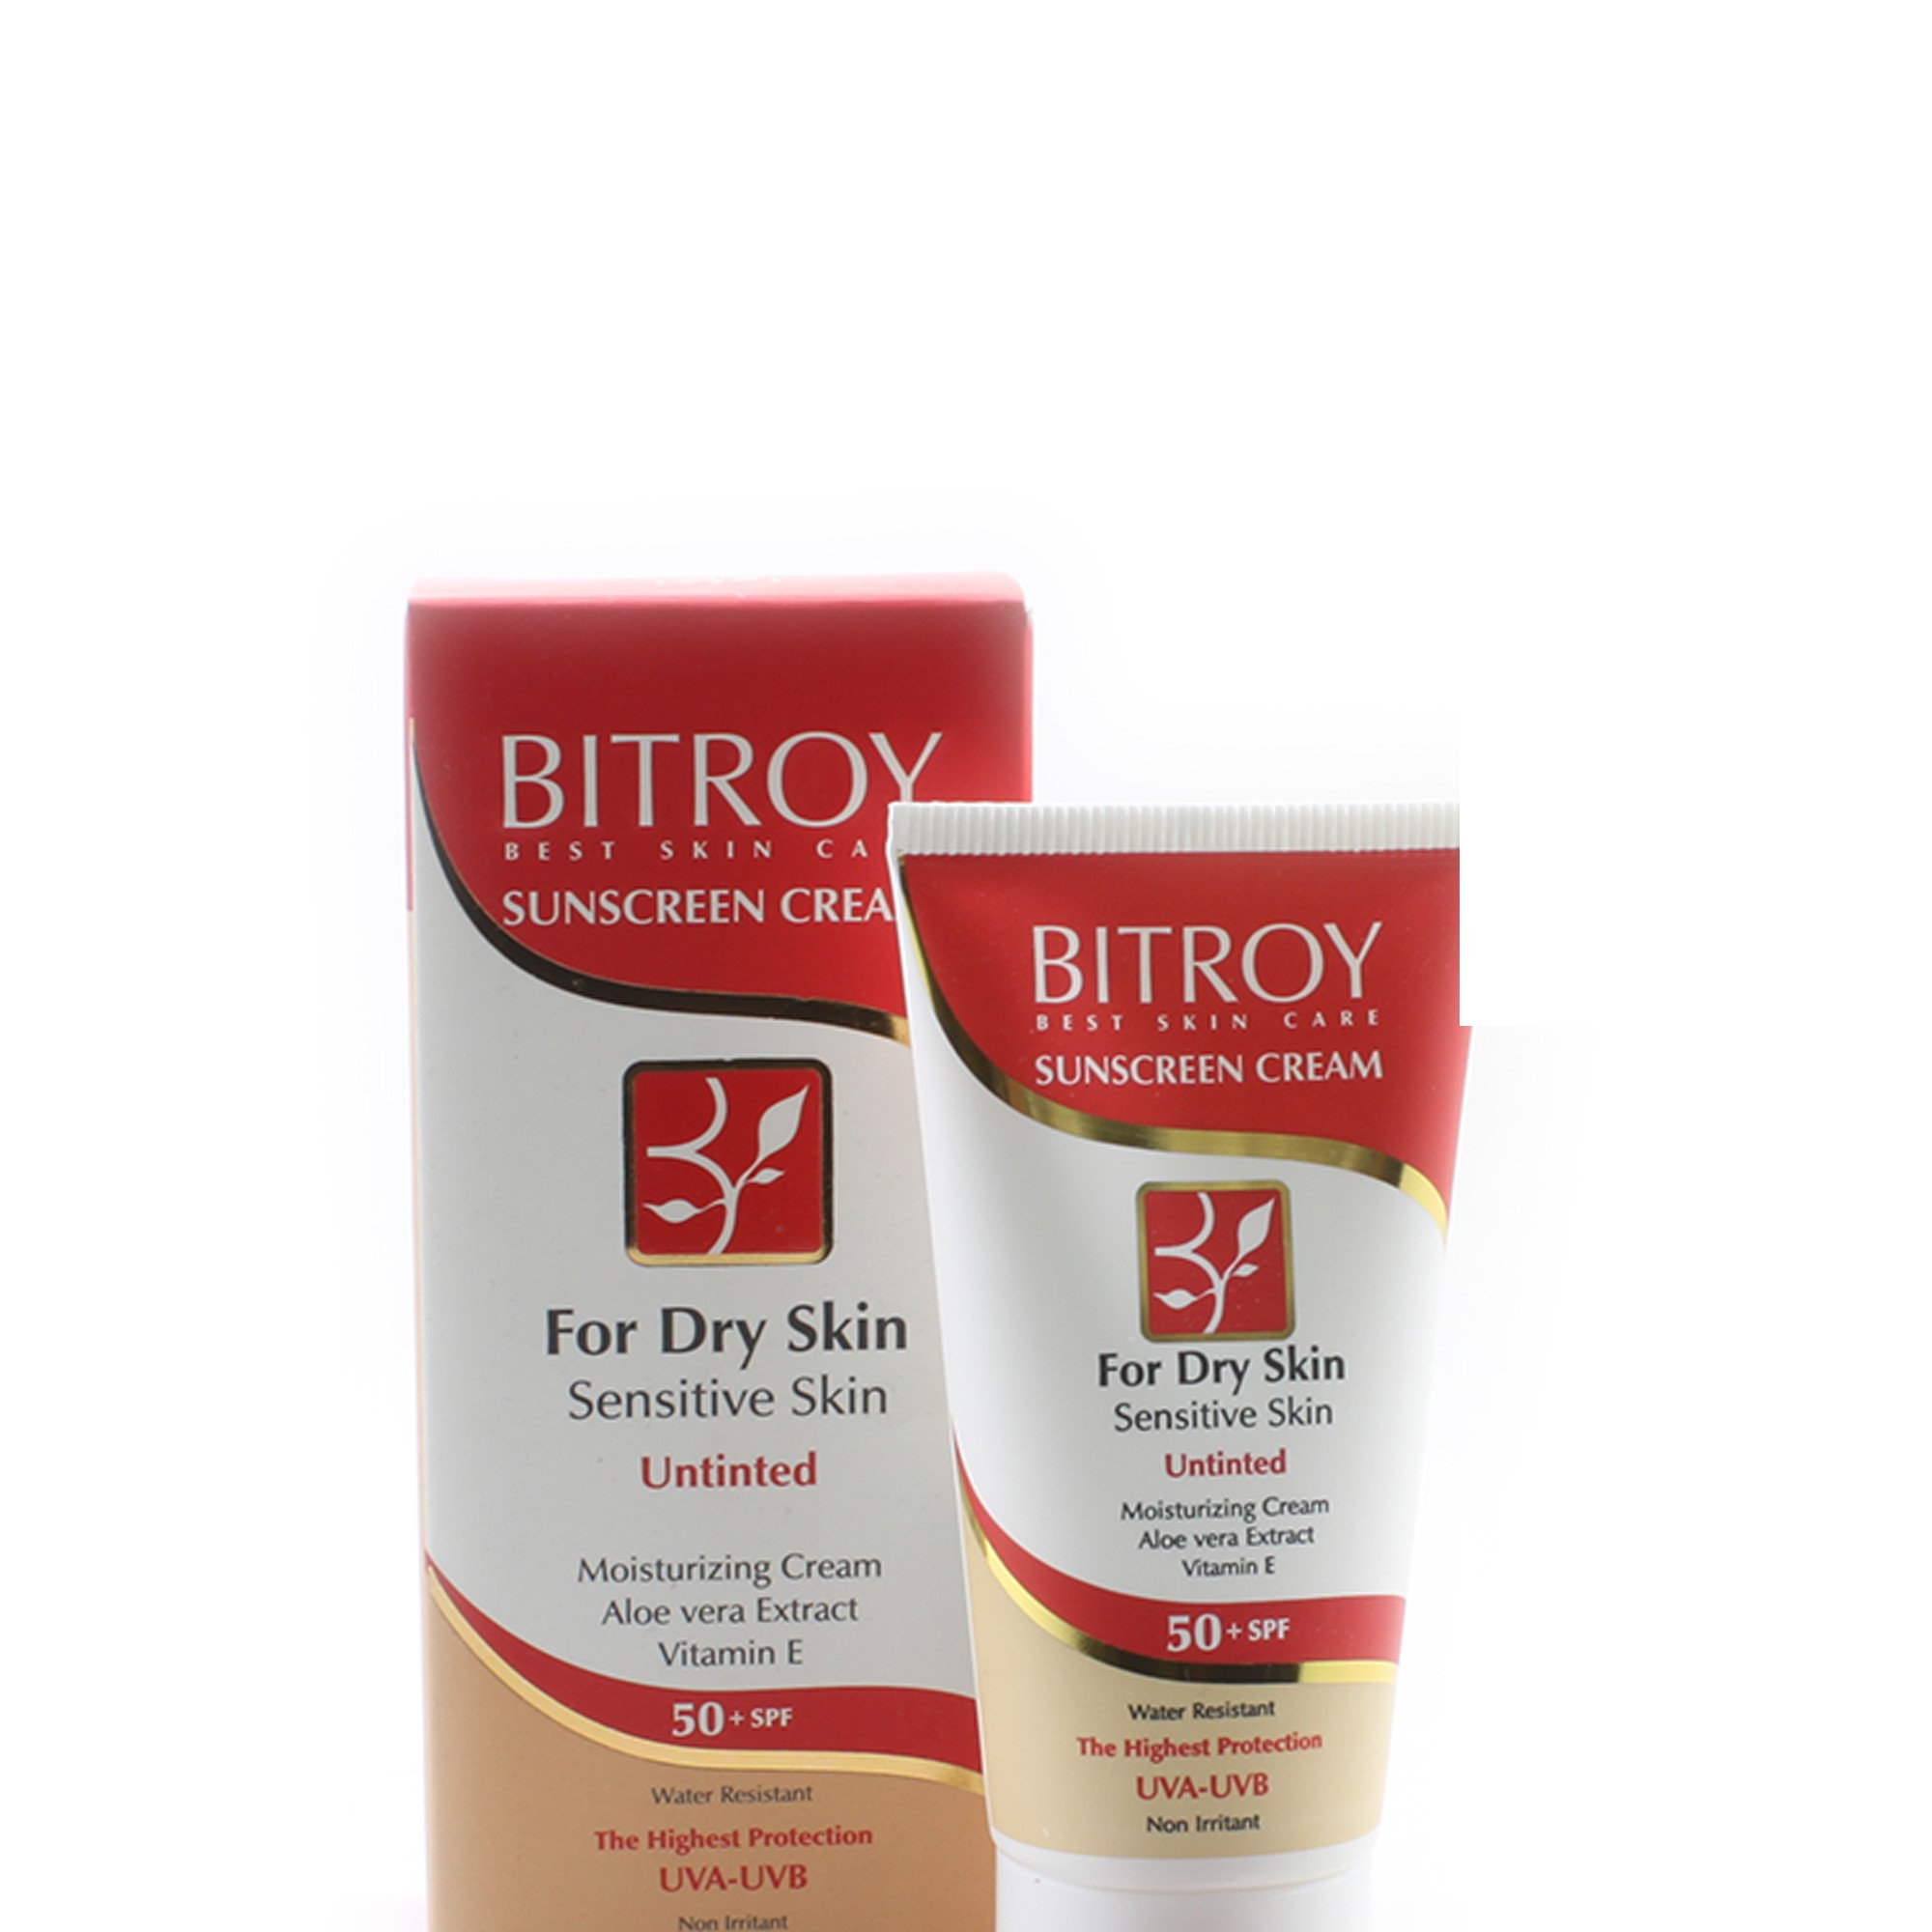 کرم ضدآفتاب مناسب پوست های خشک و حساس با SPF50 بدون رنگ بیتروی